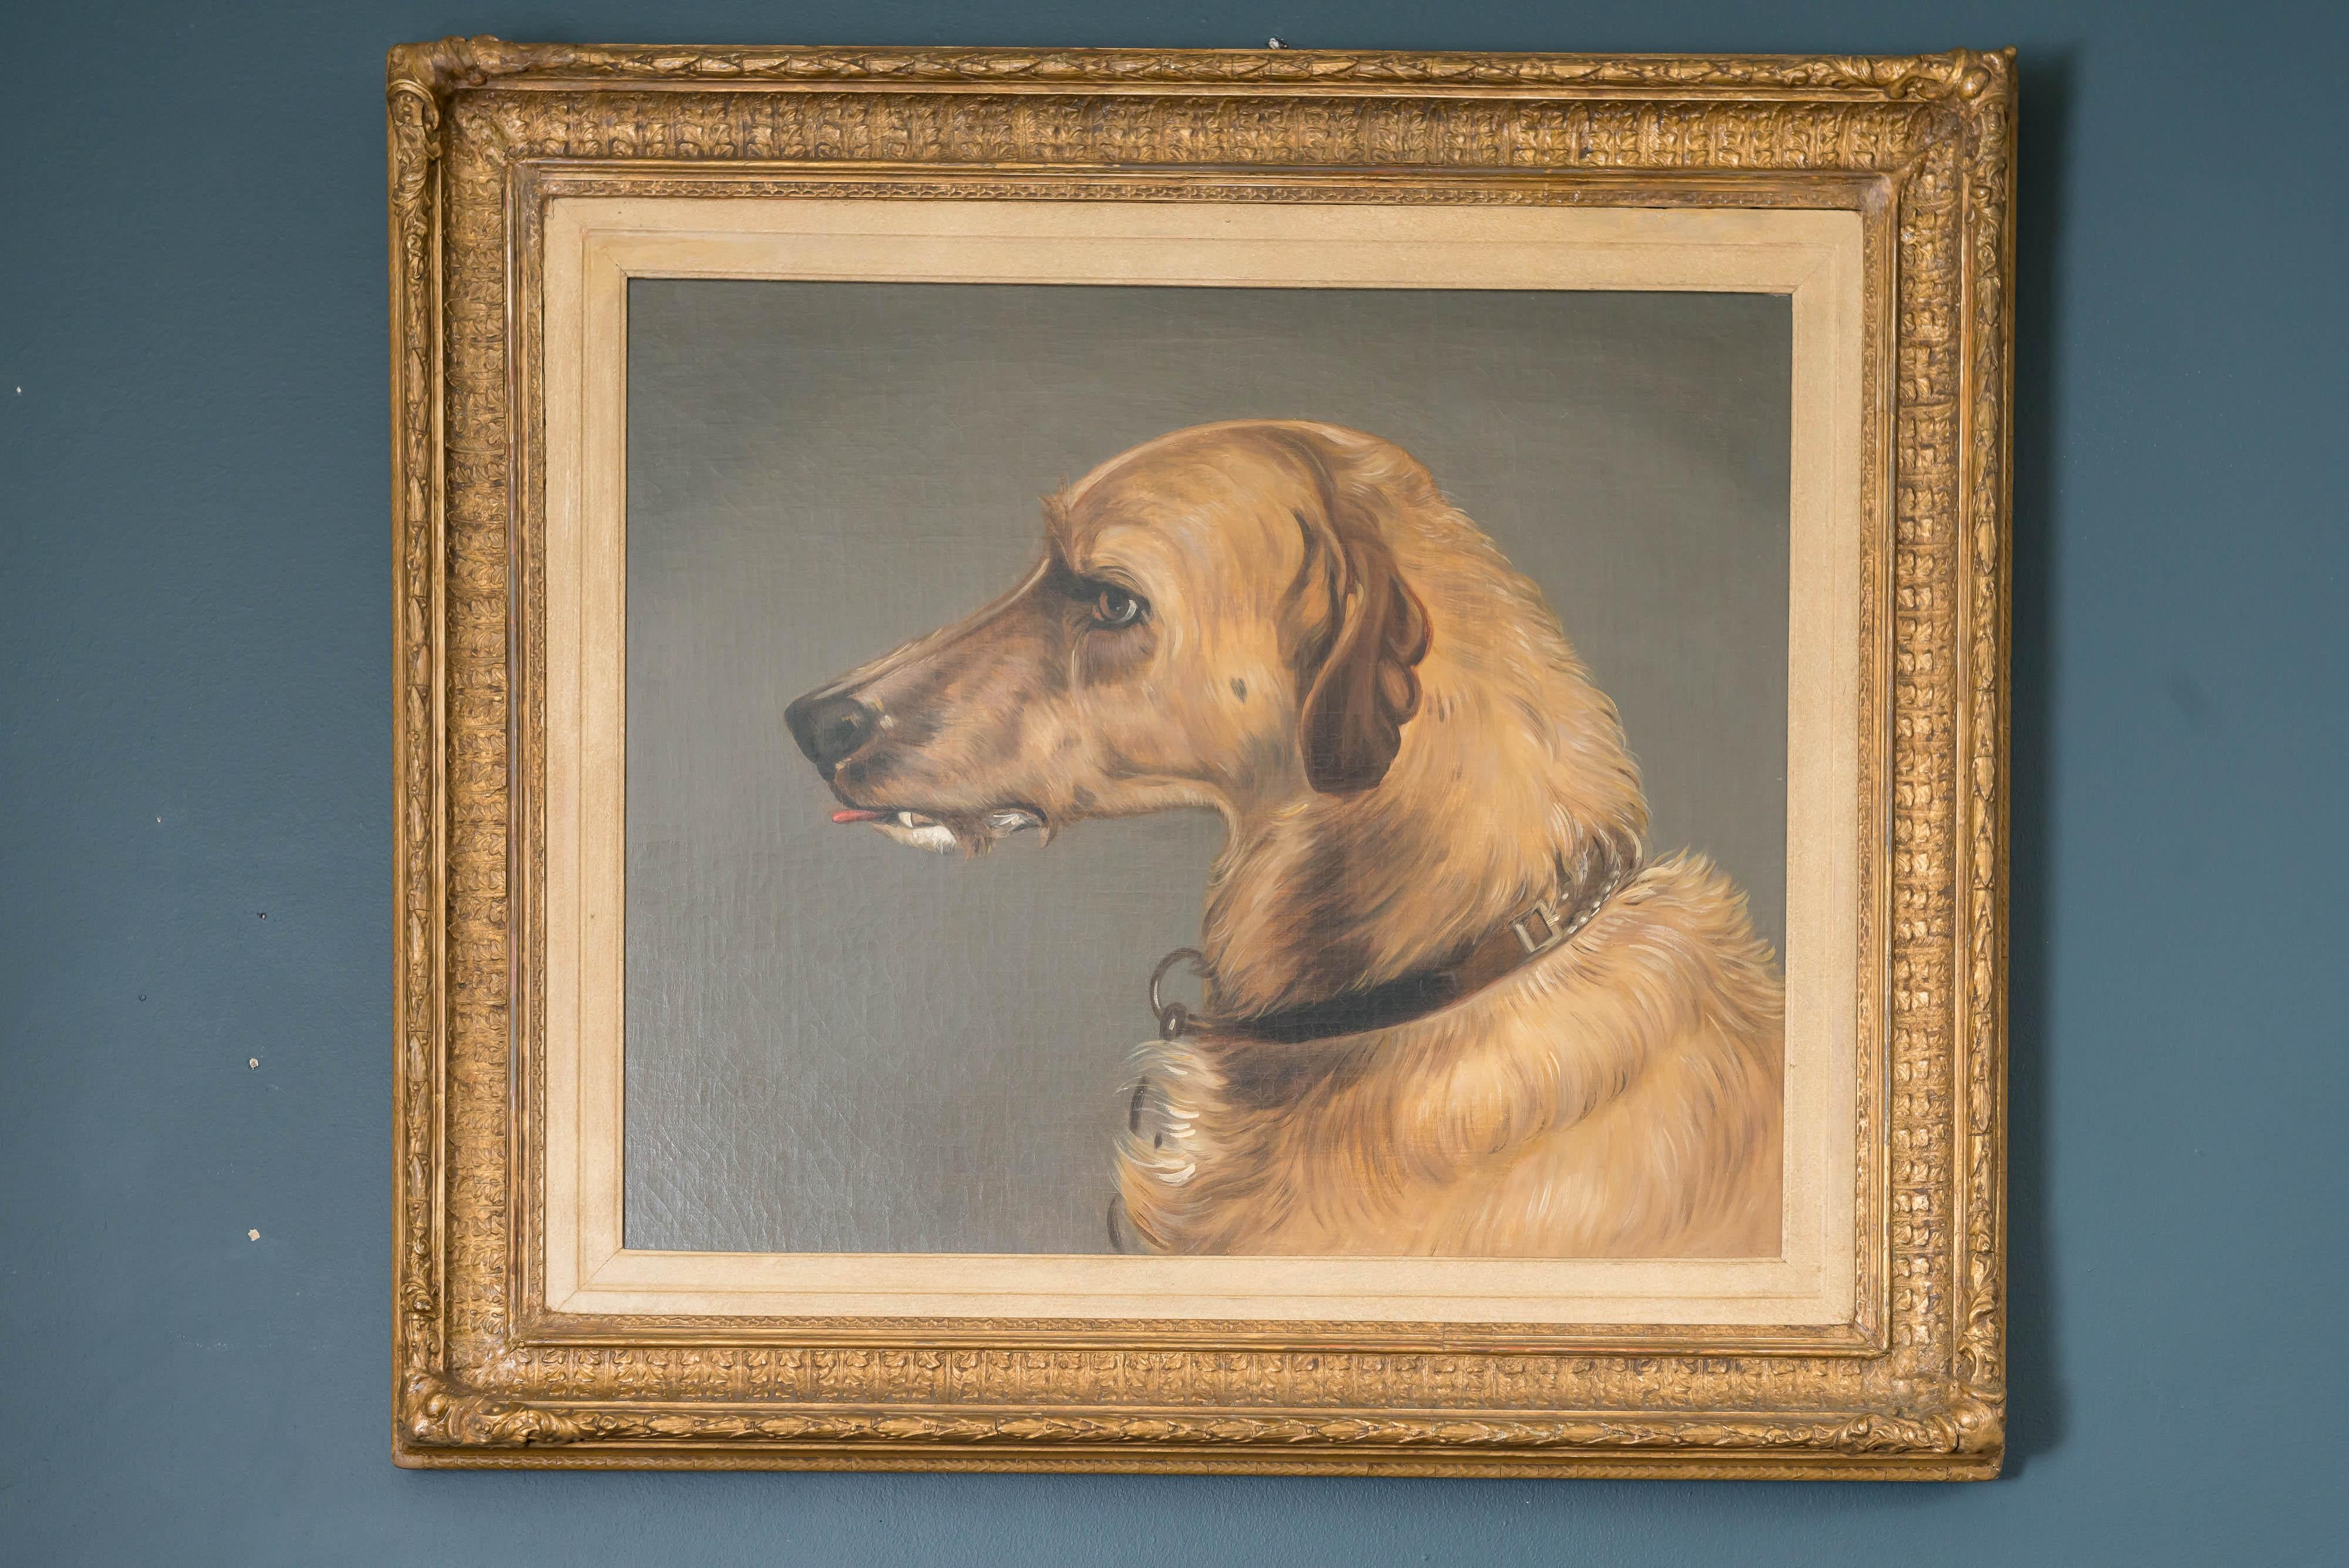 Belle huile sur toile anglaise du 19ème siècle : Portrait d'un chien, d'après Edwin Landseer. La photo au verso est documentée, toile originale, initialisée W M May 1882. 
D'après un dessin du chien de chasse écossais de Landseer réalisé vers